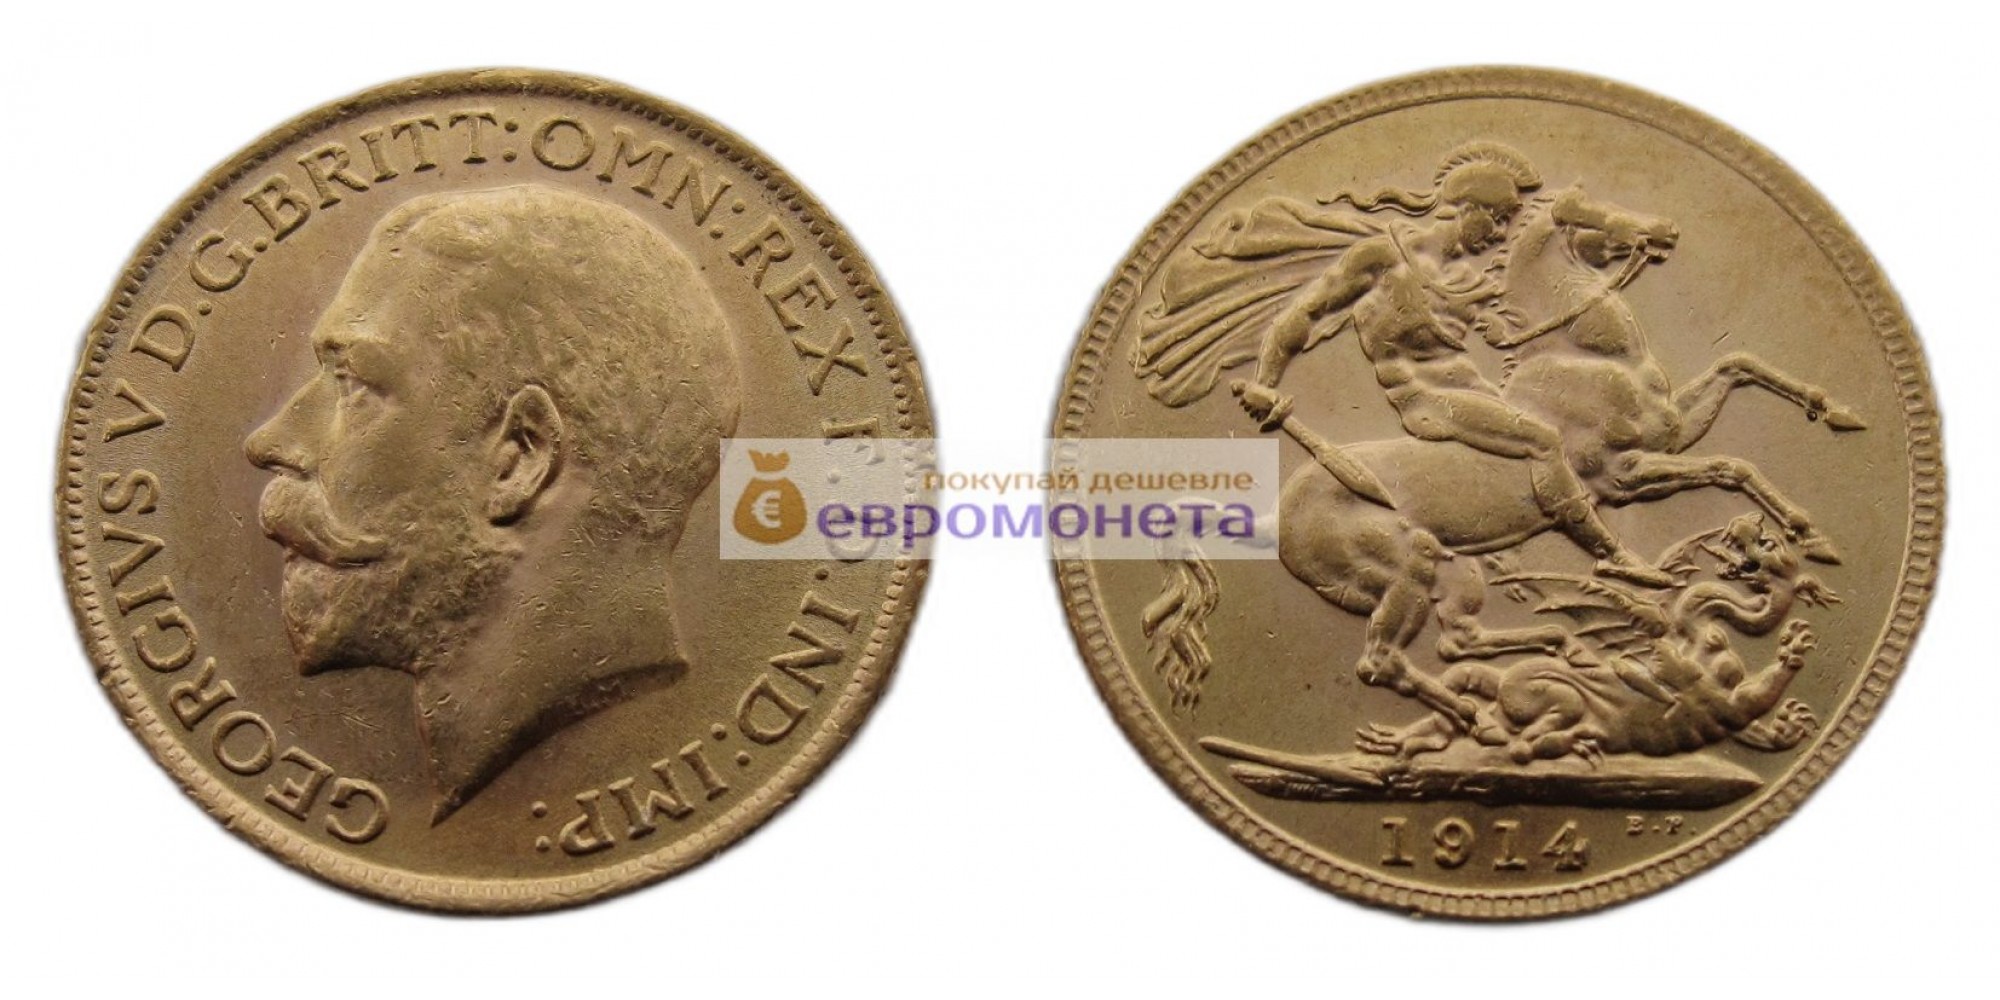 Великобритания 1 фунт (соверен) 1914 год. Король Георг V. Золото. АЦ